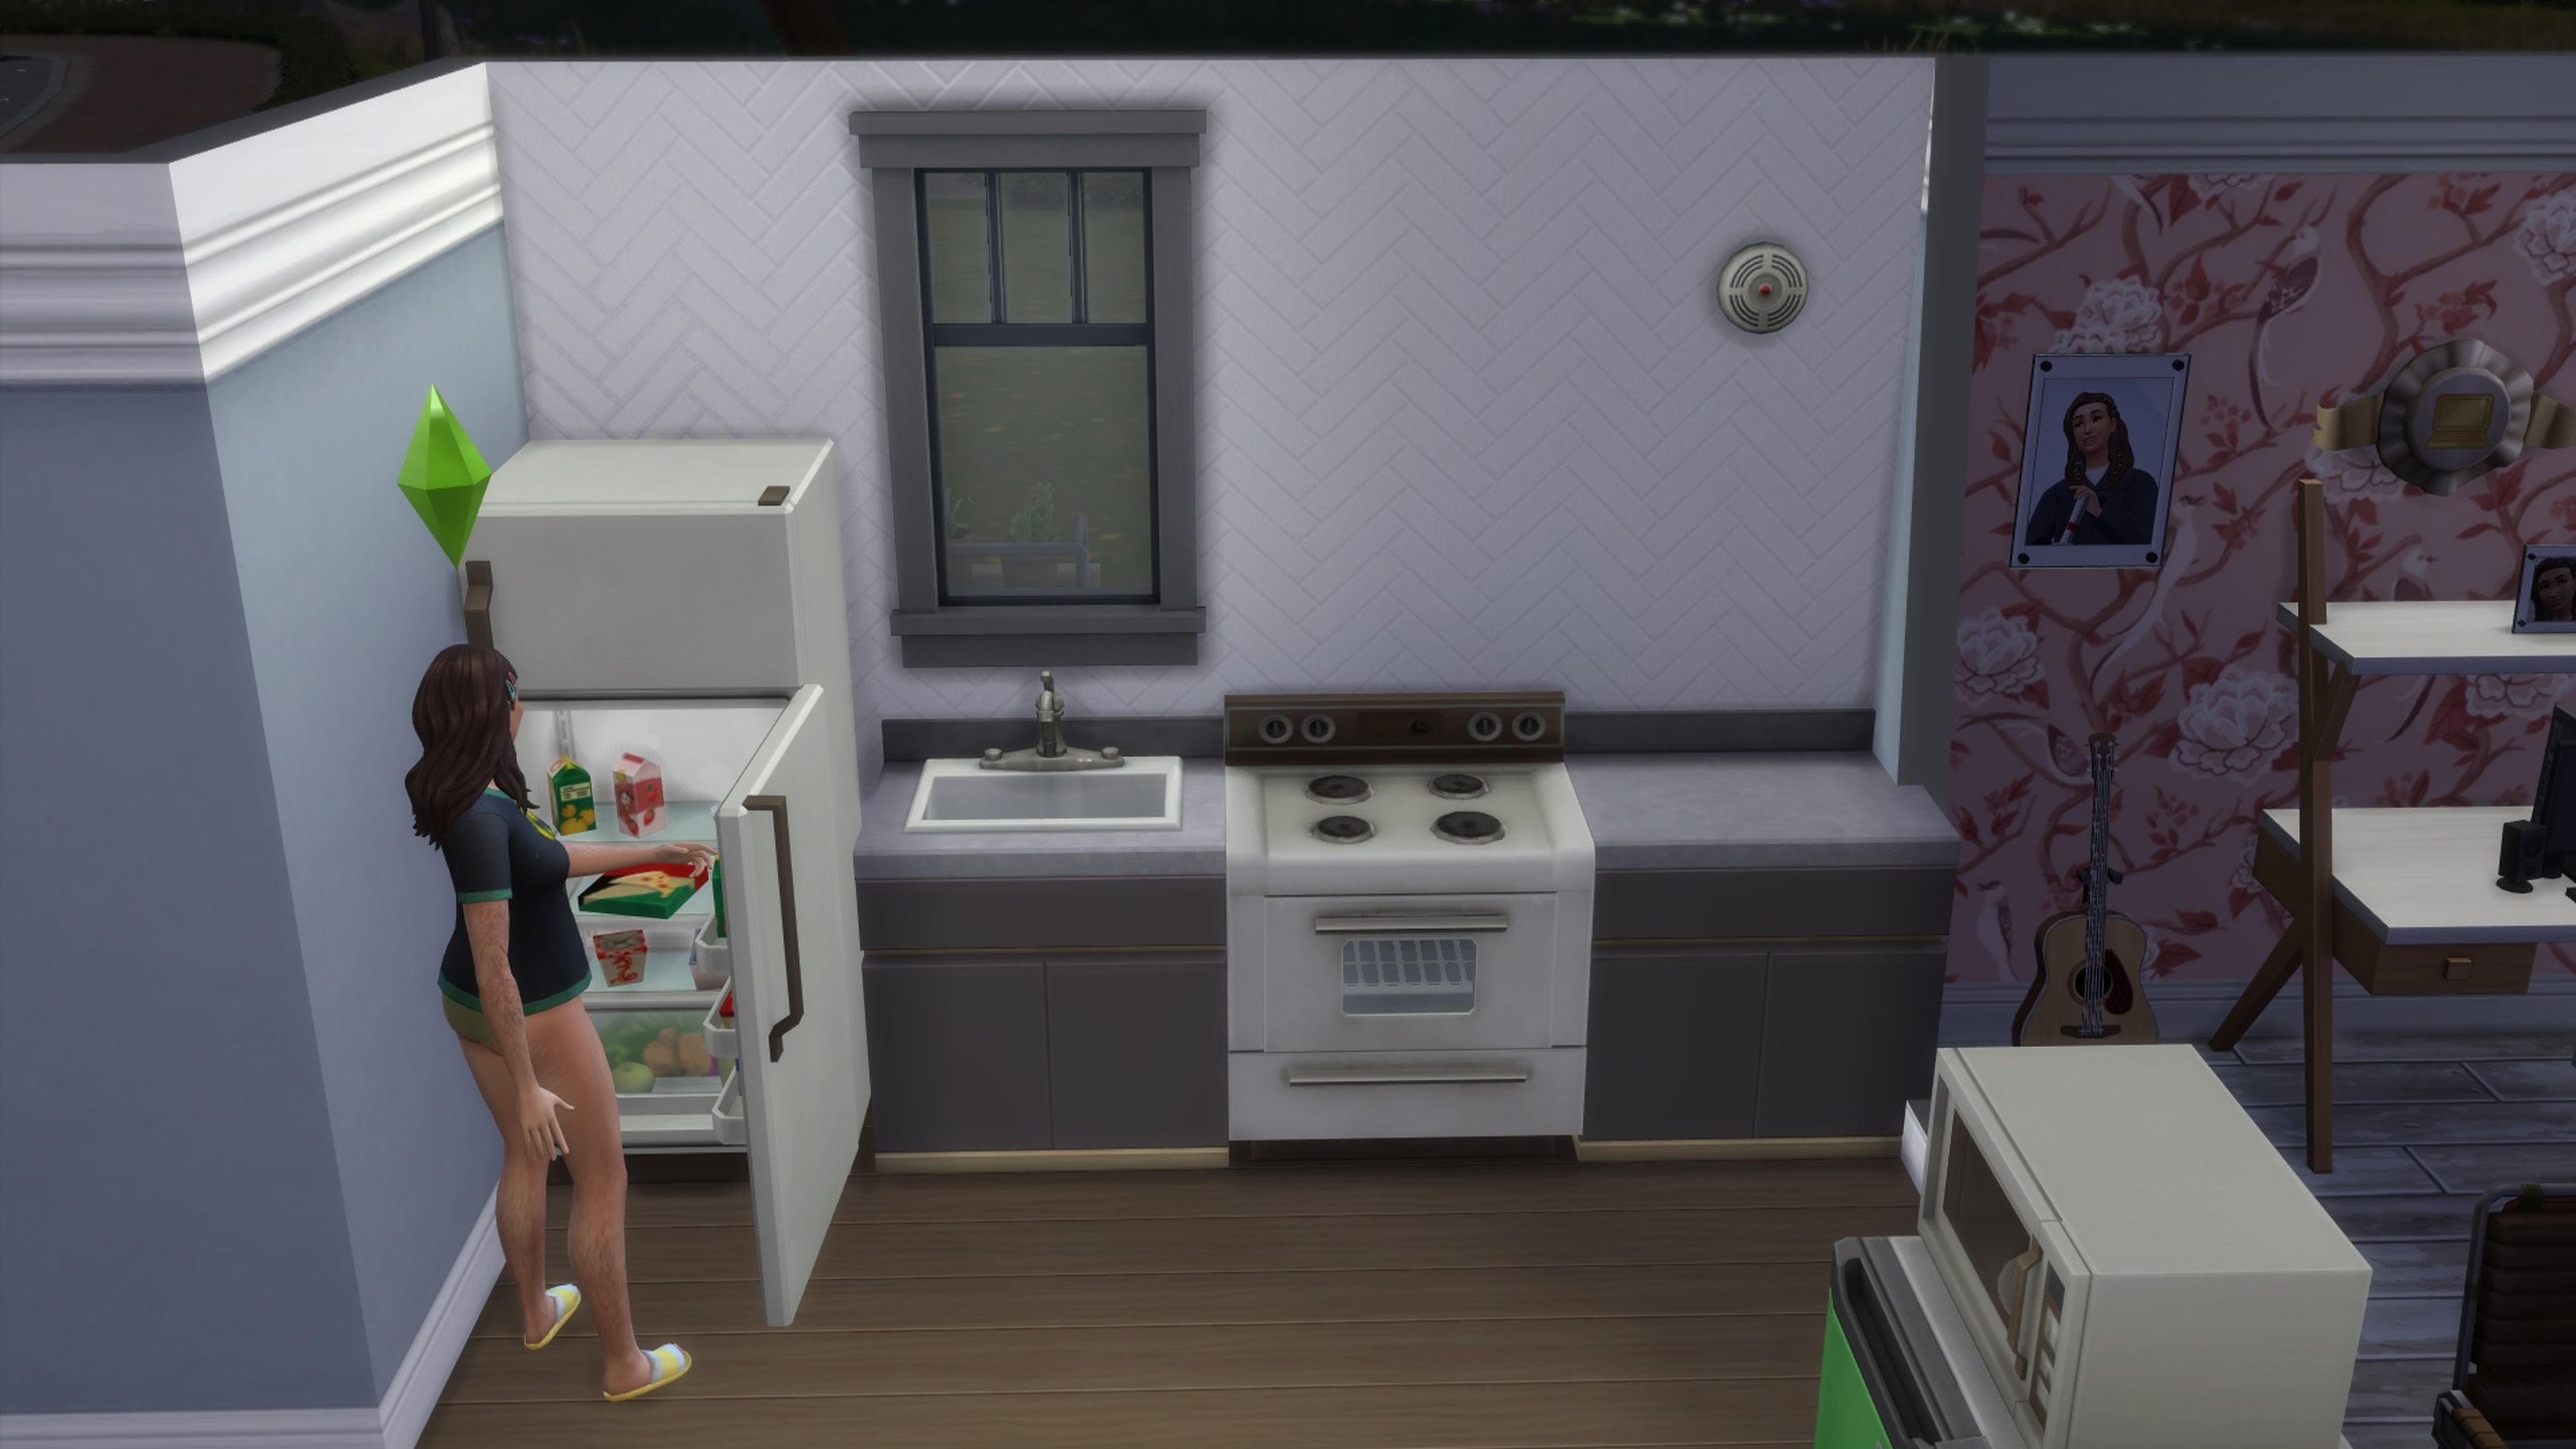 Captura de pantalla de Los Sims 4. Alarma de fuego en el hogar.